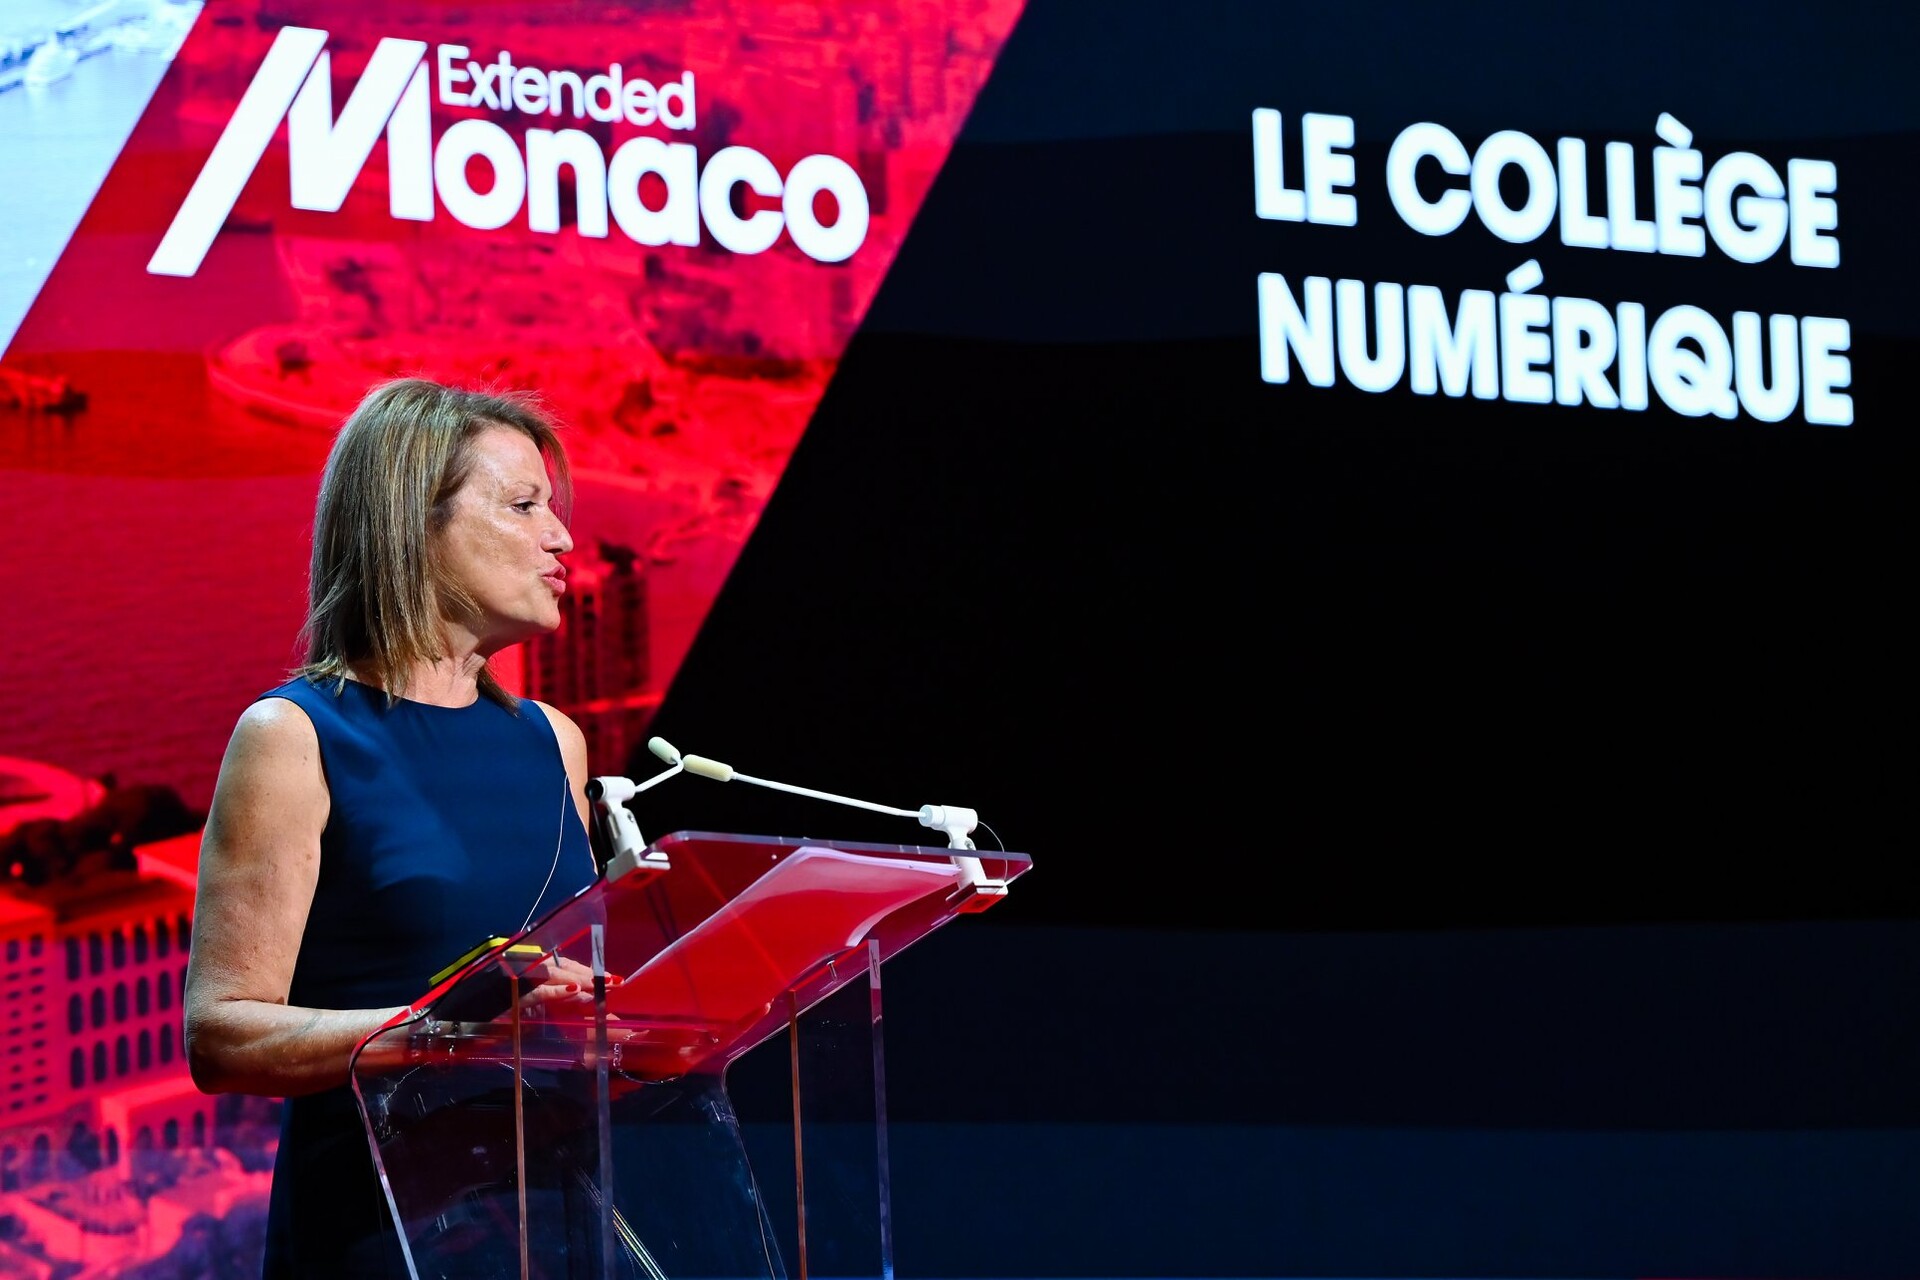 Монако: Изабель Бонналь, директор национального образования, молодежи и спорта Княжества Монако